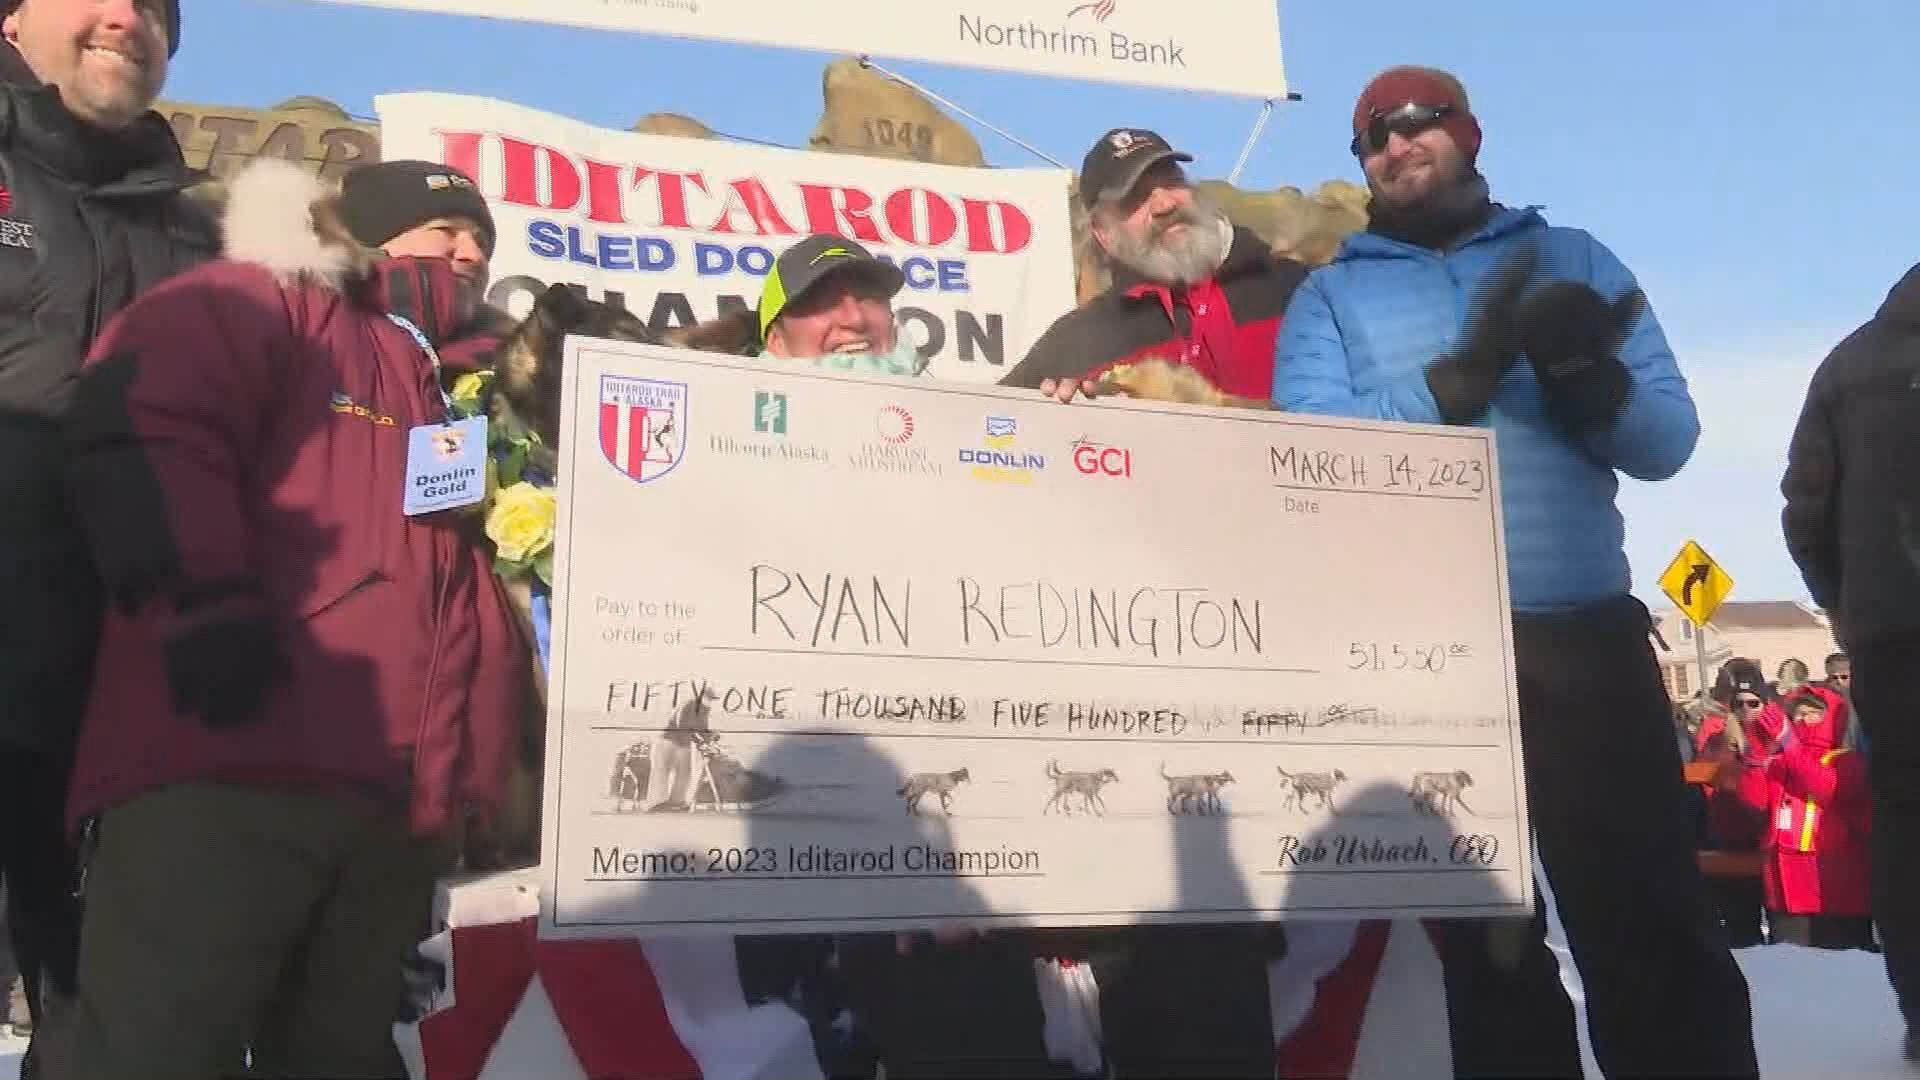 Ryan Redington wins the 2023 Iditarod